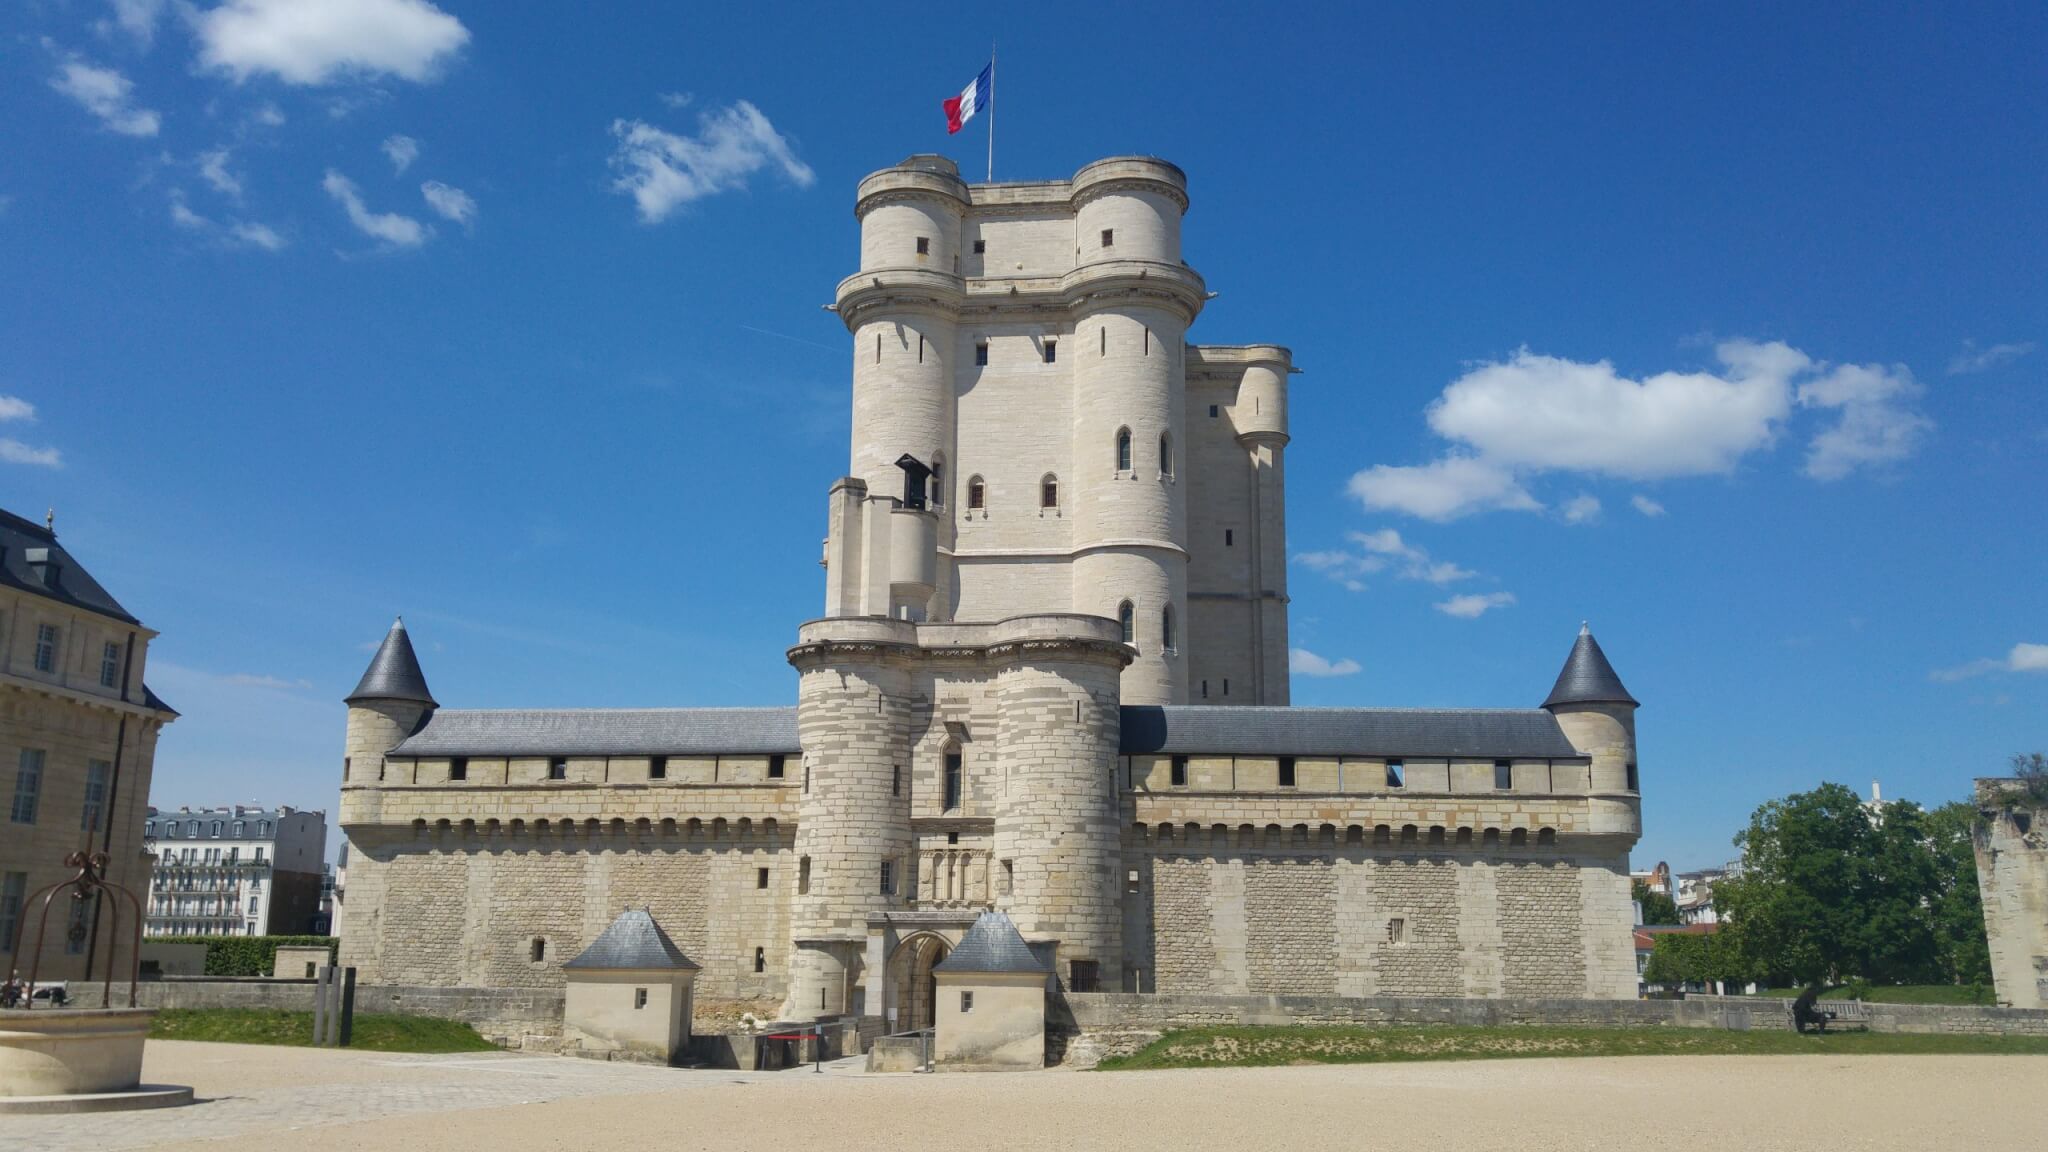 Le château de Vincennes, qui possède l'un des plus haut donjon d'Europe ©vincennes-tourisme